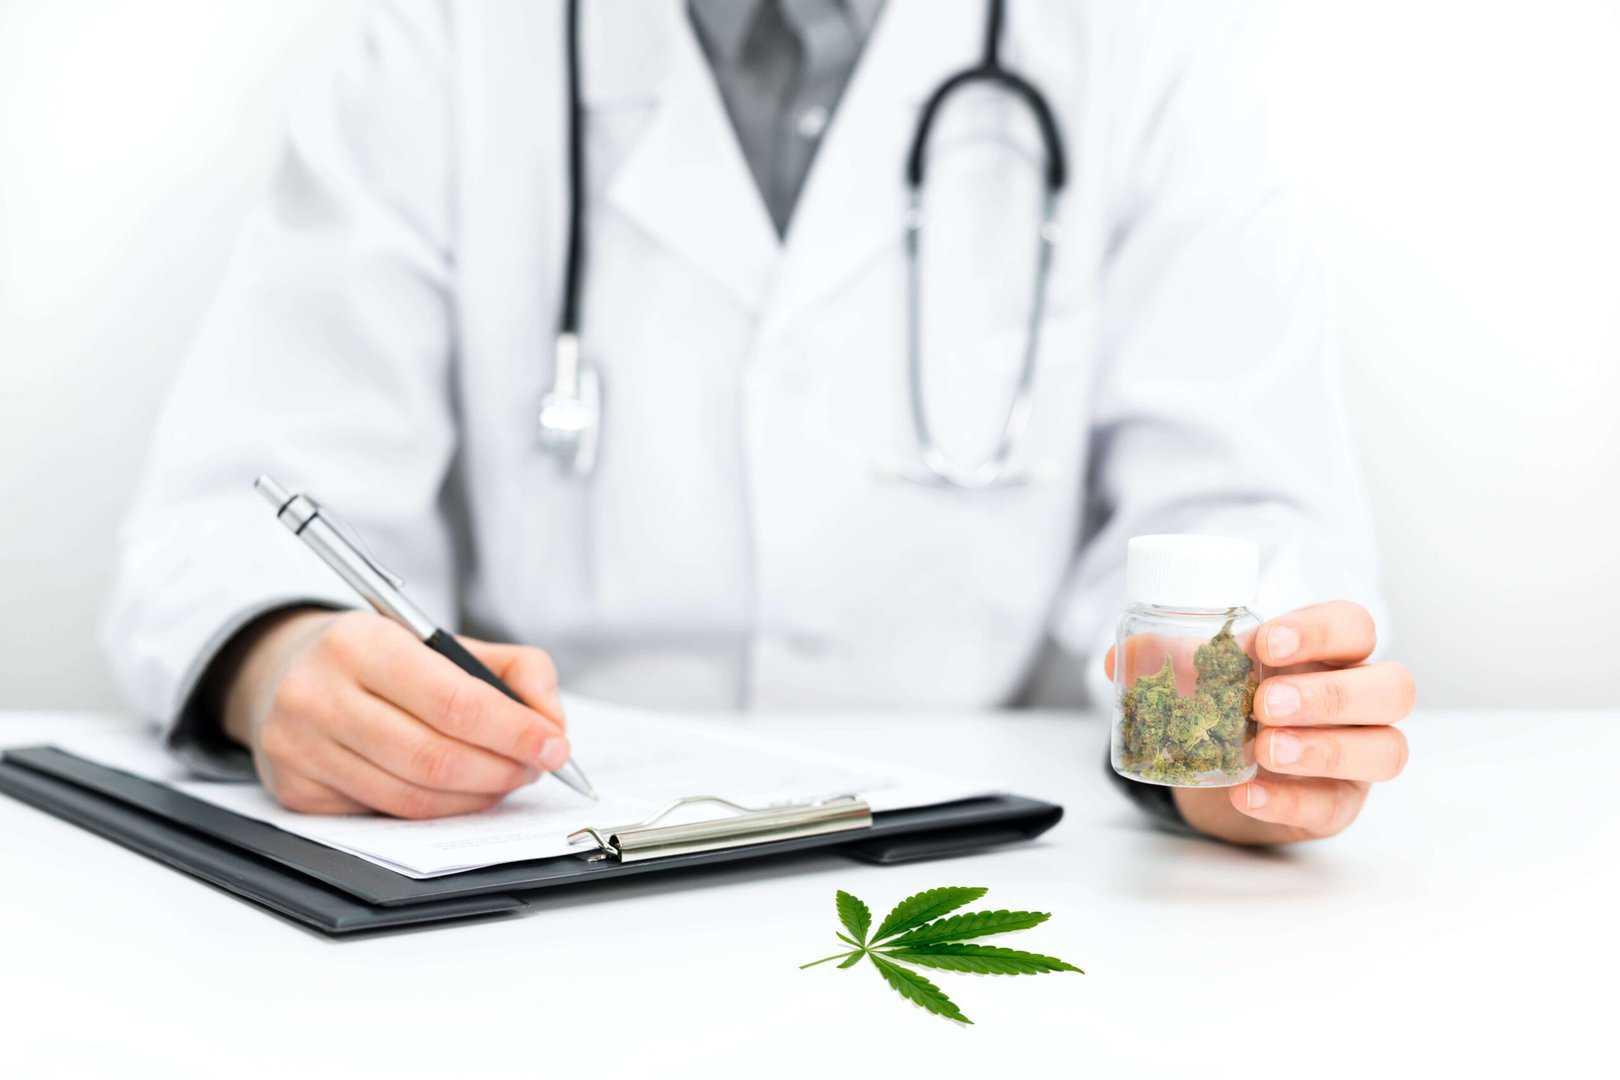 The uses of medical cannabis mycannabis